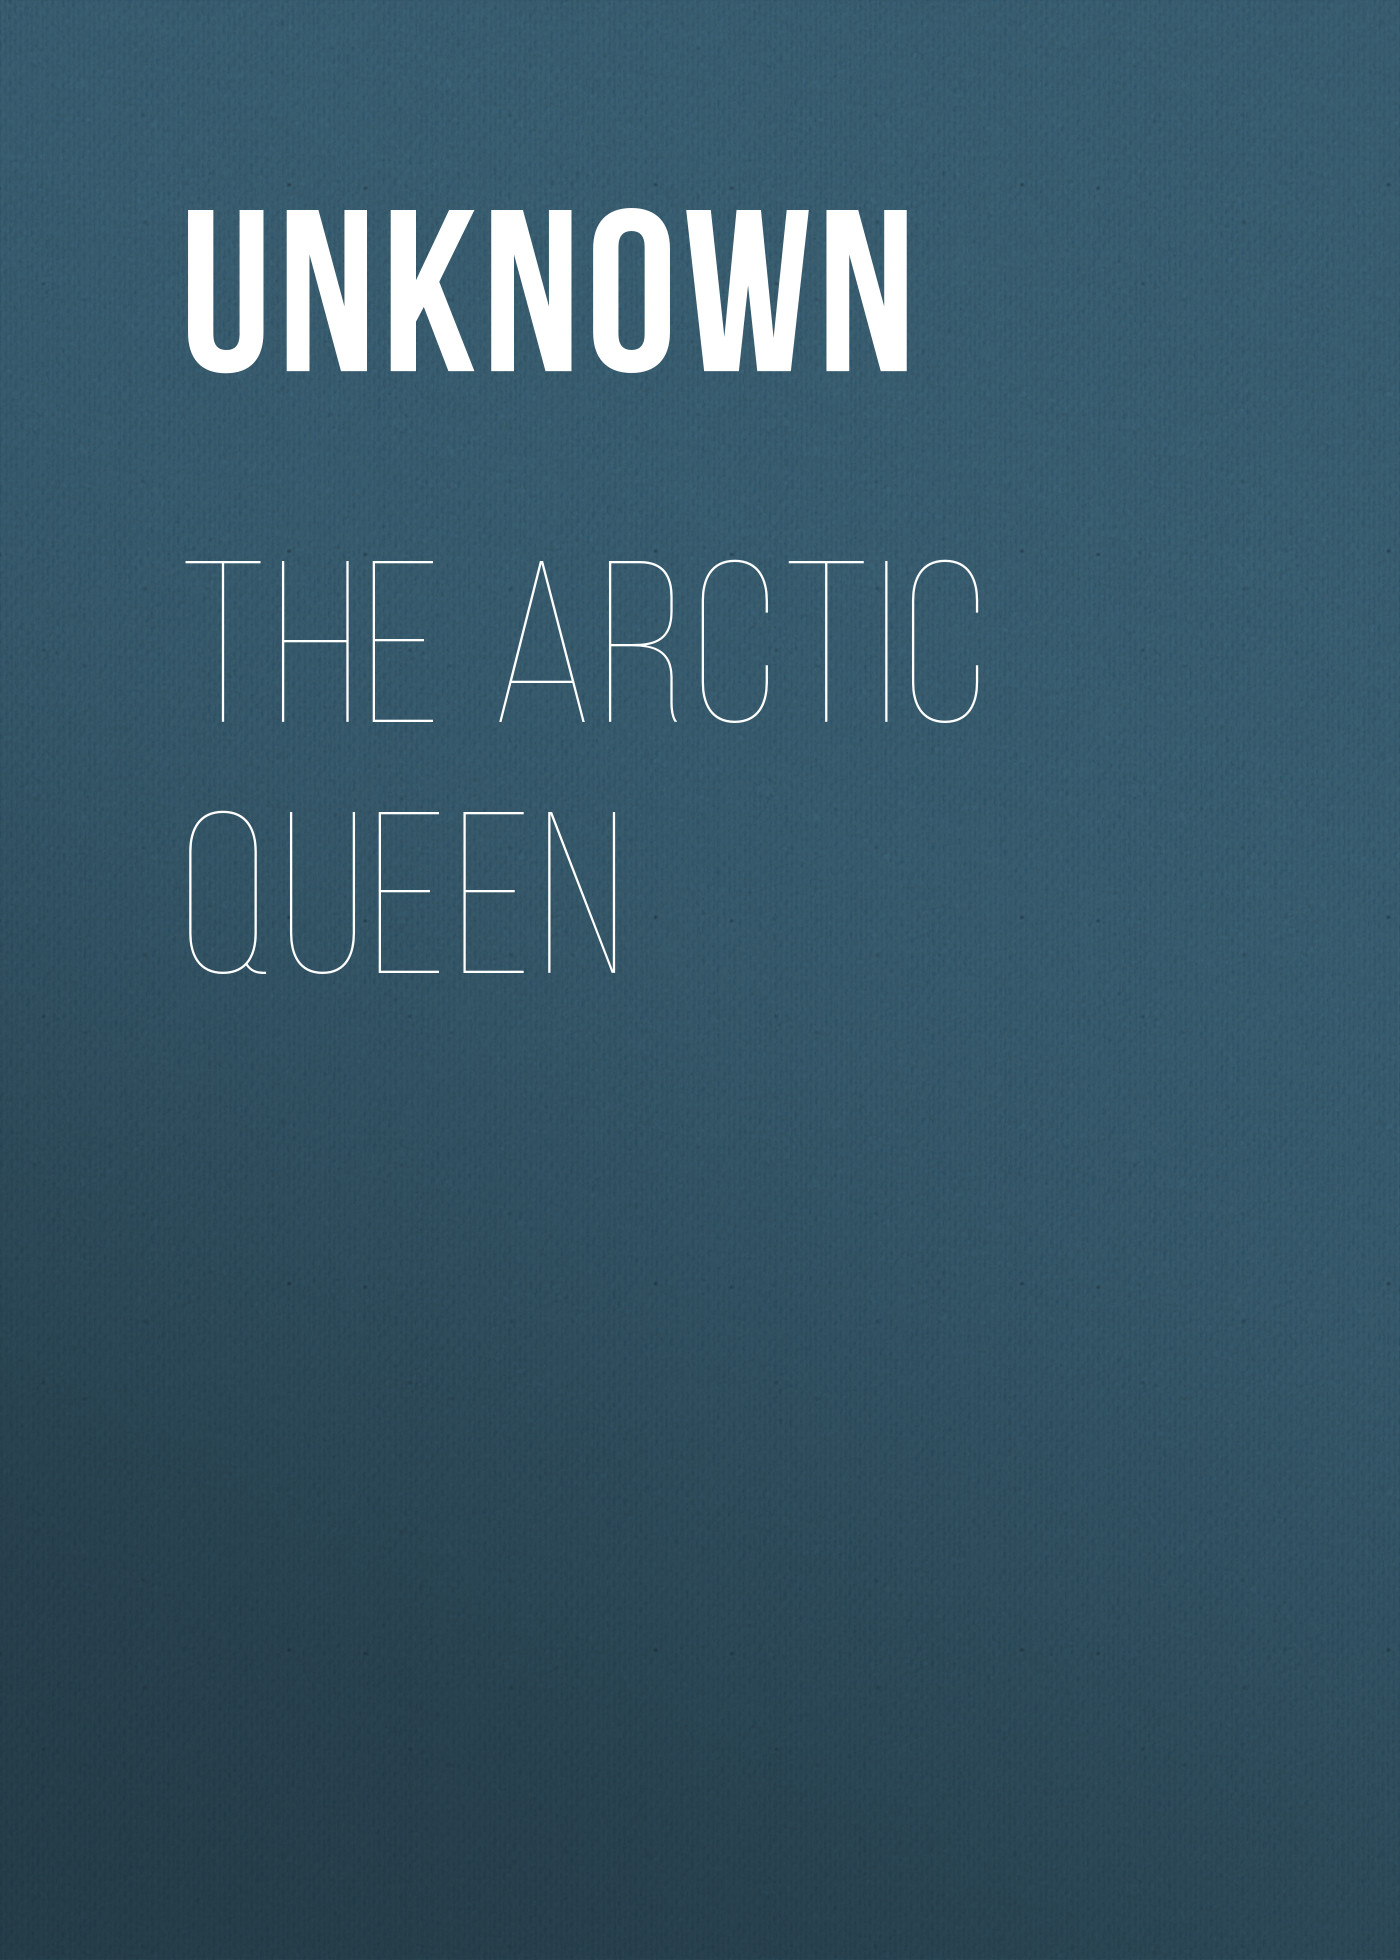 The Arctic Queen